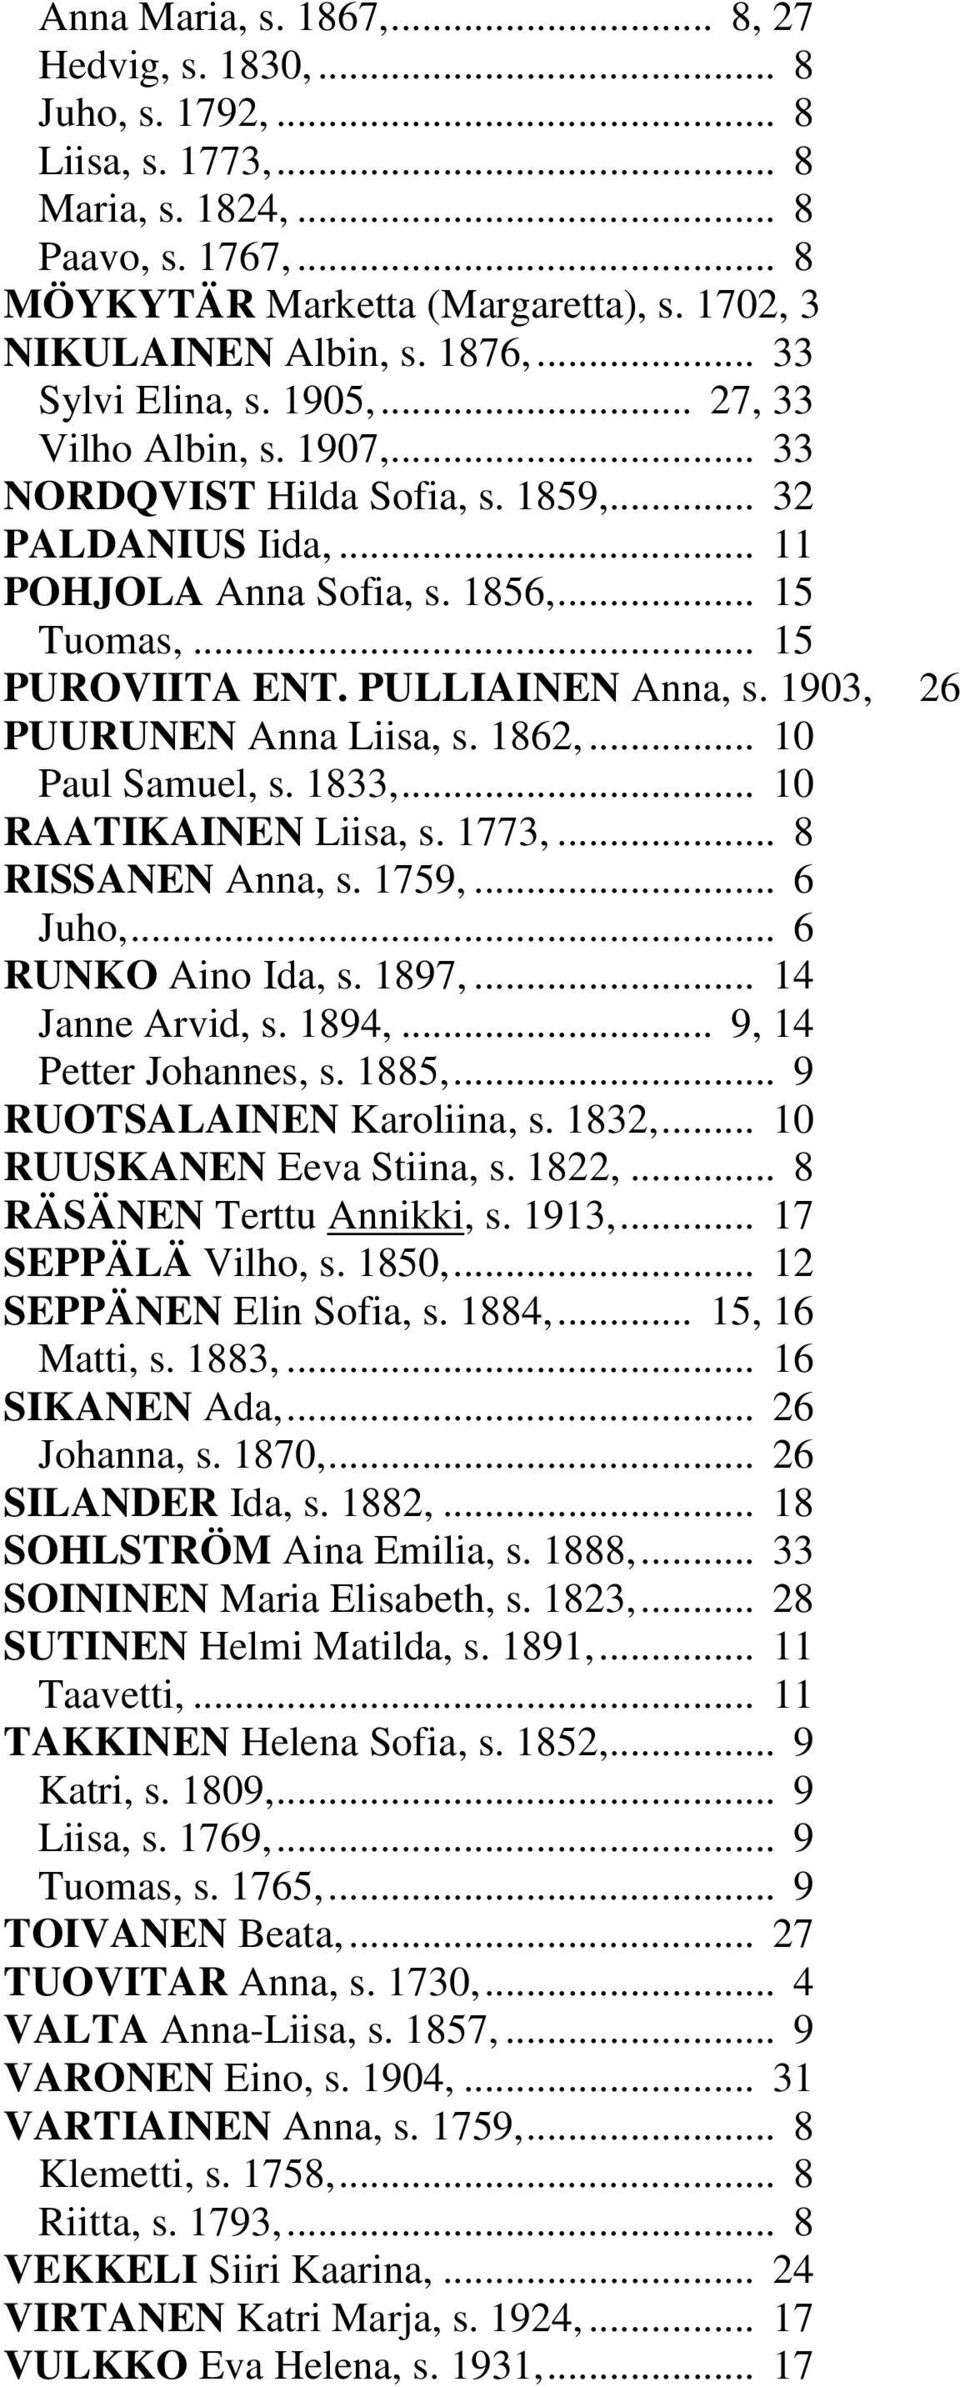 PULLIAINEN Anna, s. 1903, 26 PUURUNEN Anna Liisa, s. 1862,... 10 Paul Samuel, s. 1833,... 10 RAATIKAINEN Liisa, s. 1773,... 8 RISSANEN Anna, s. 1759,... 6 Juho,... 6 RUNKO Aino Ida, s. 1897,.